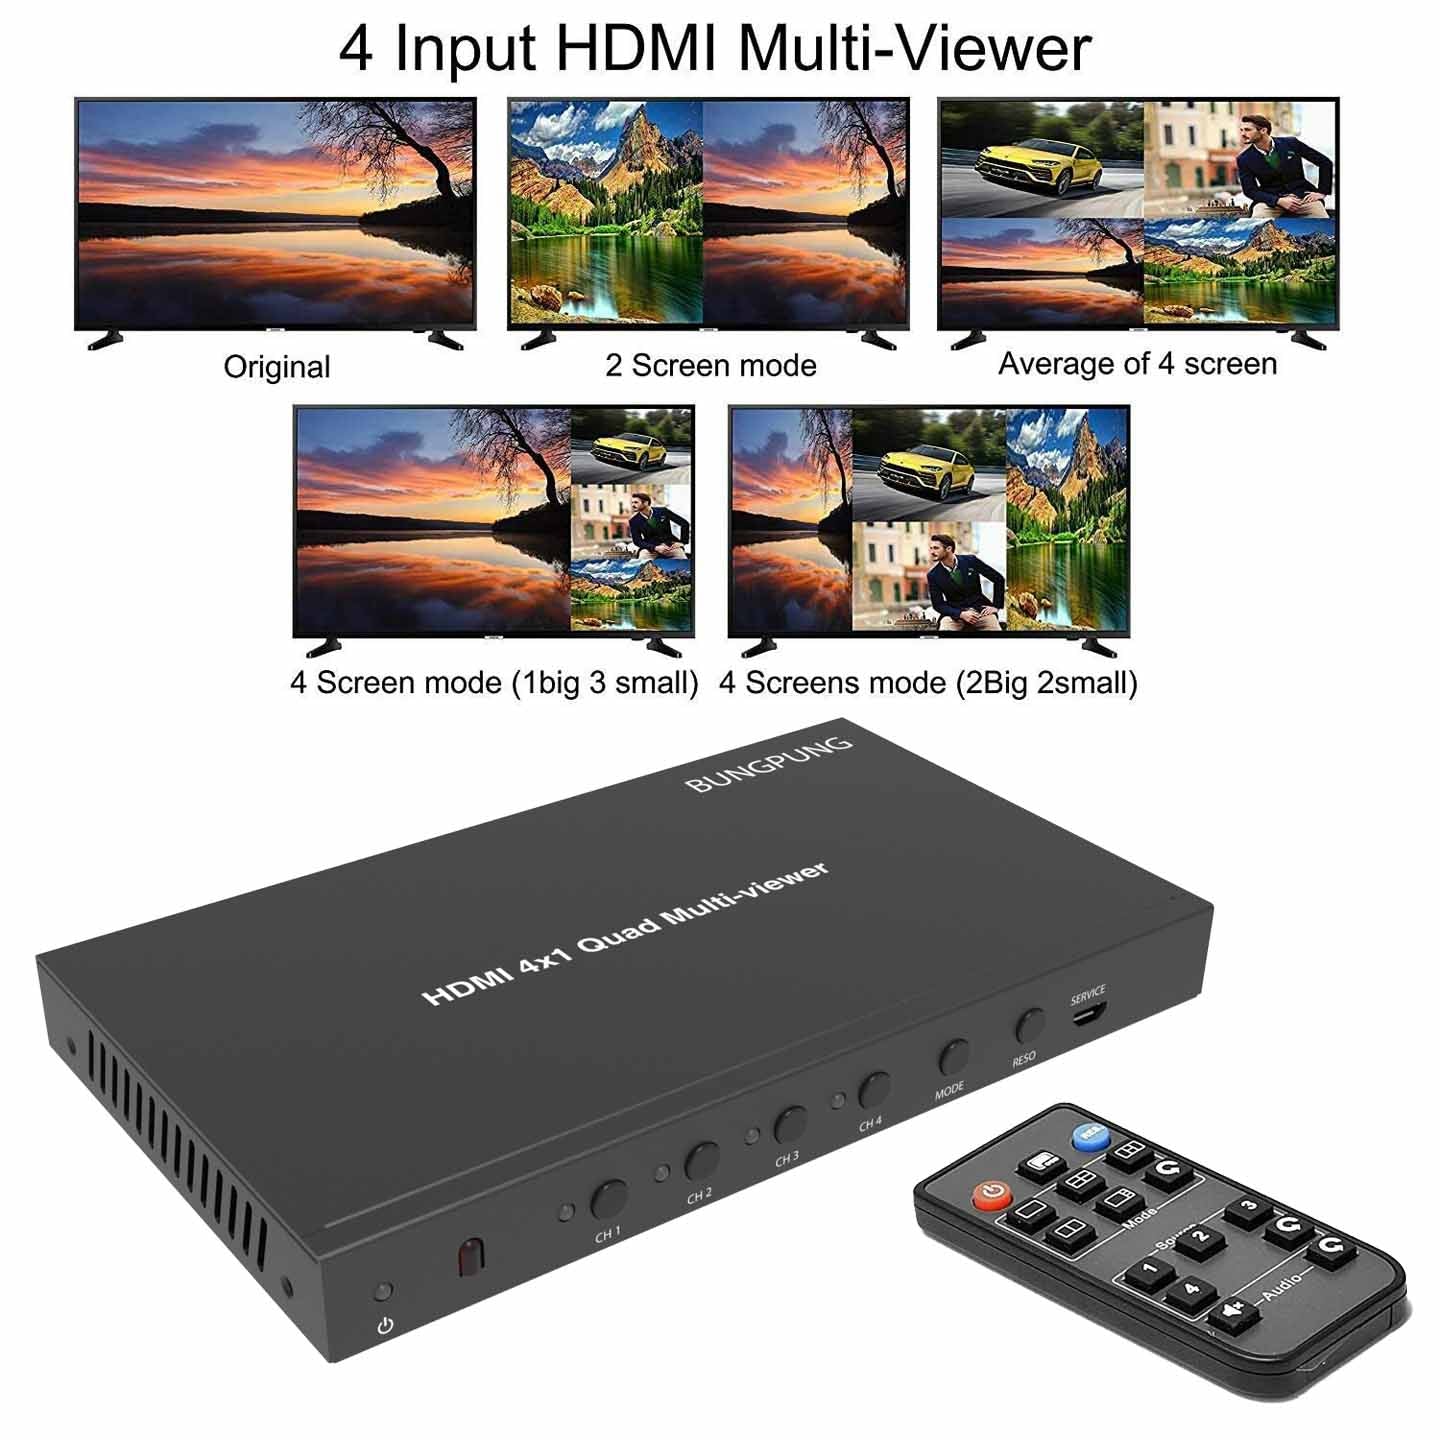 HDMI Multiviewer 4x1 1080P 60Hz function